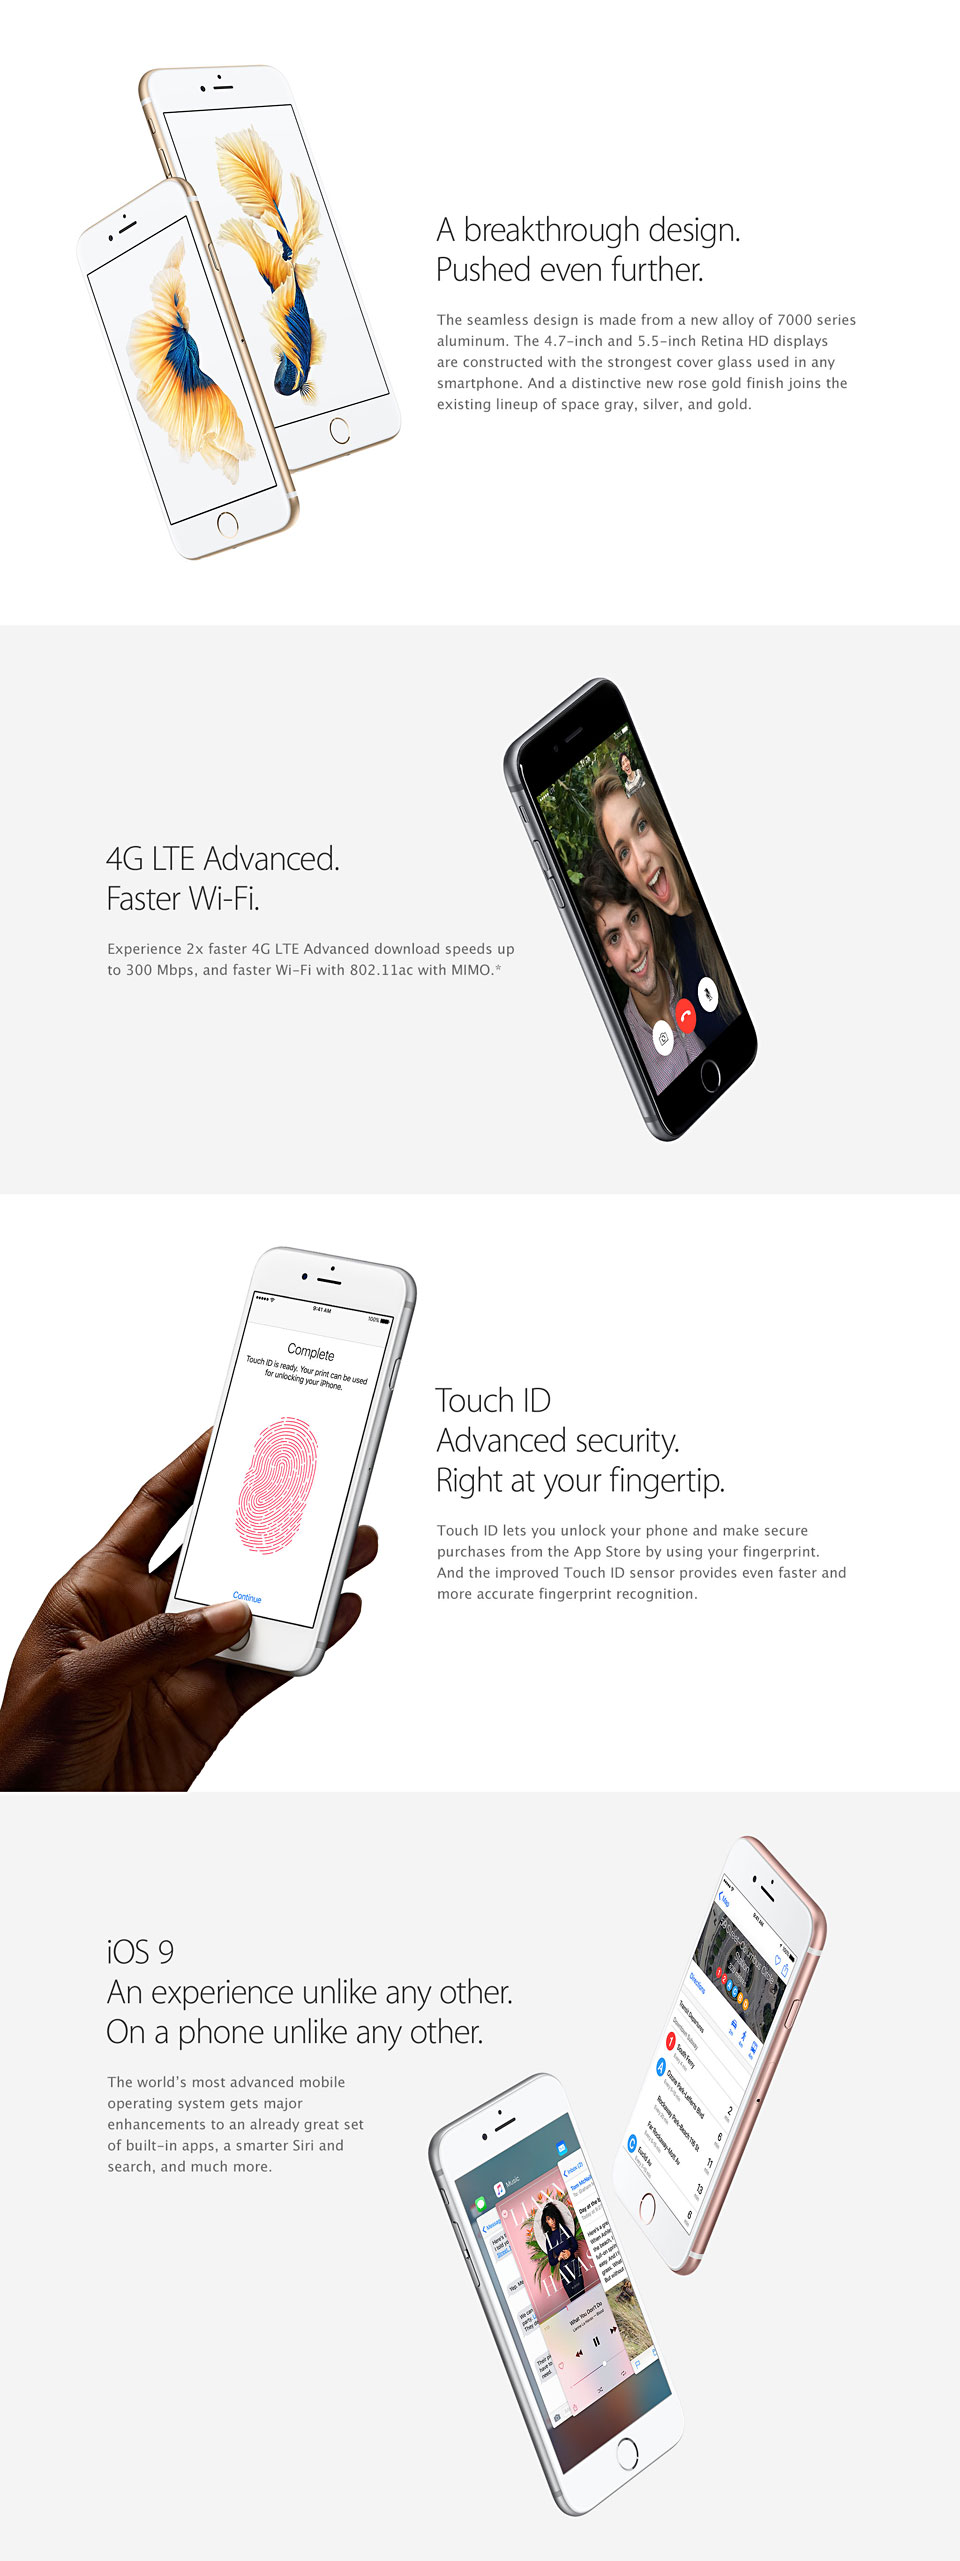 iPhone 6s | iPhone 6s plus